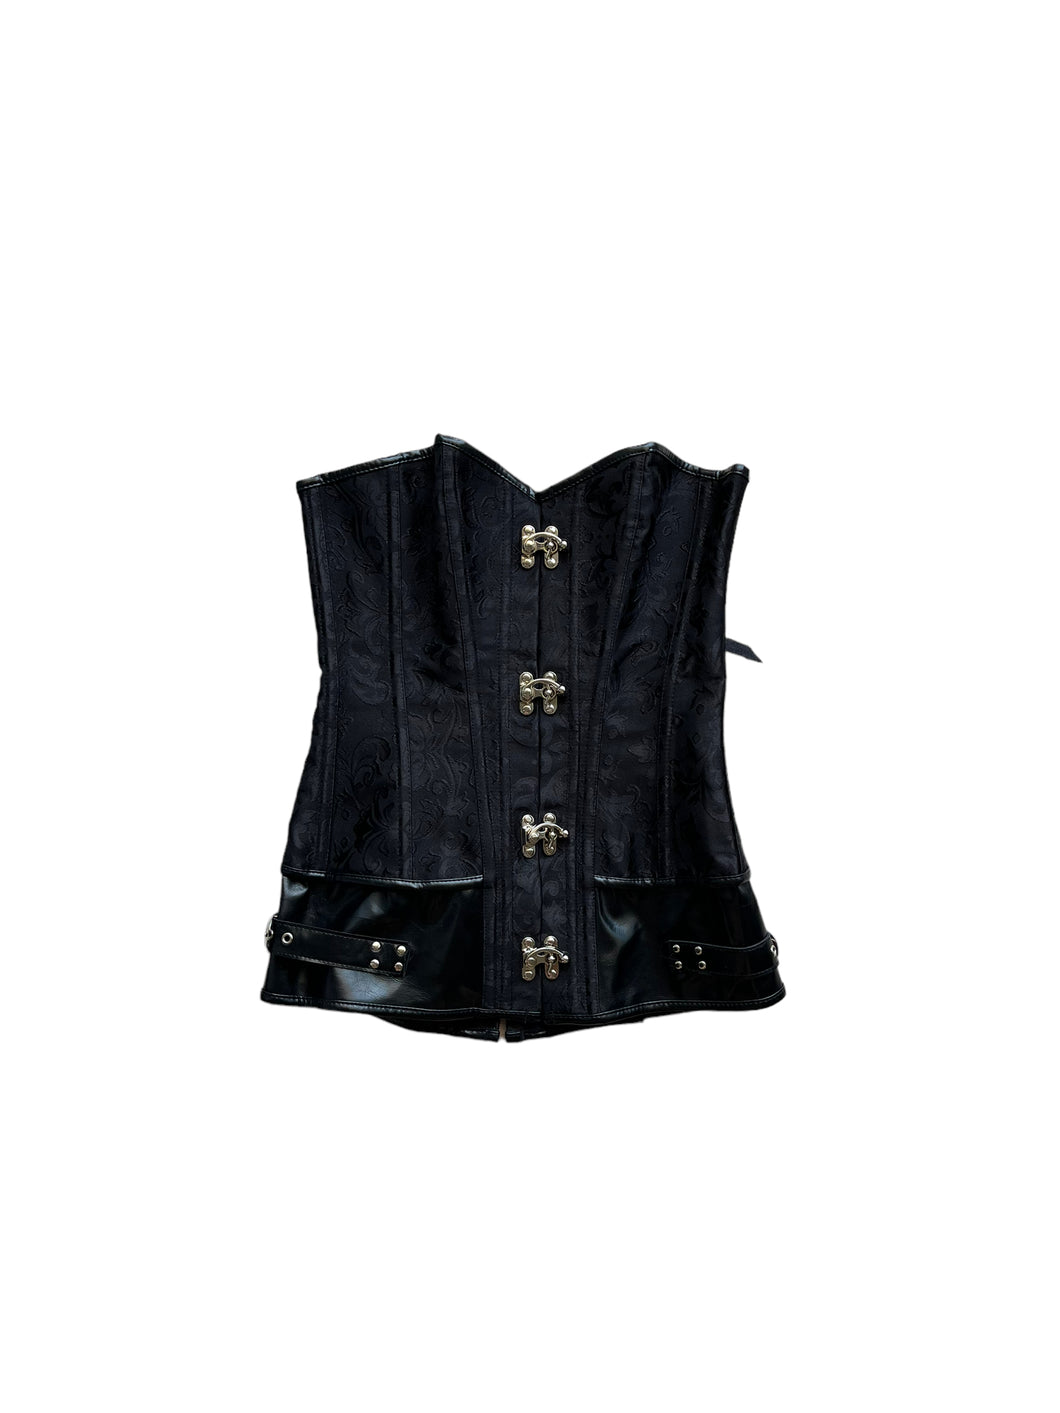 Iconic gothic corset top